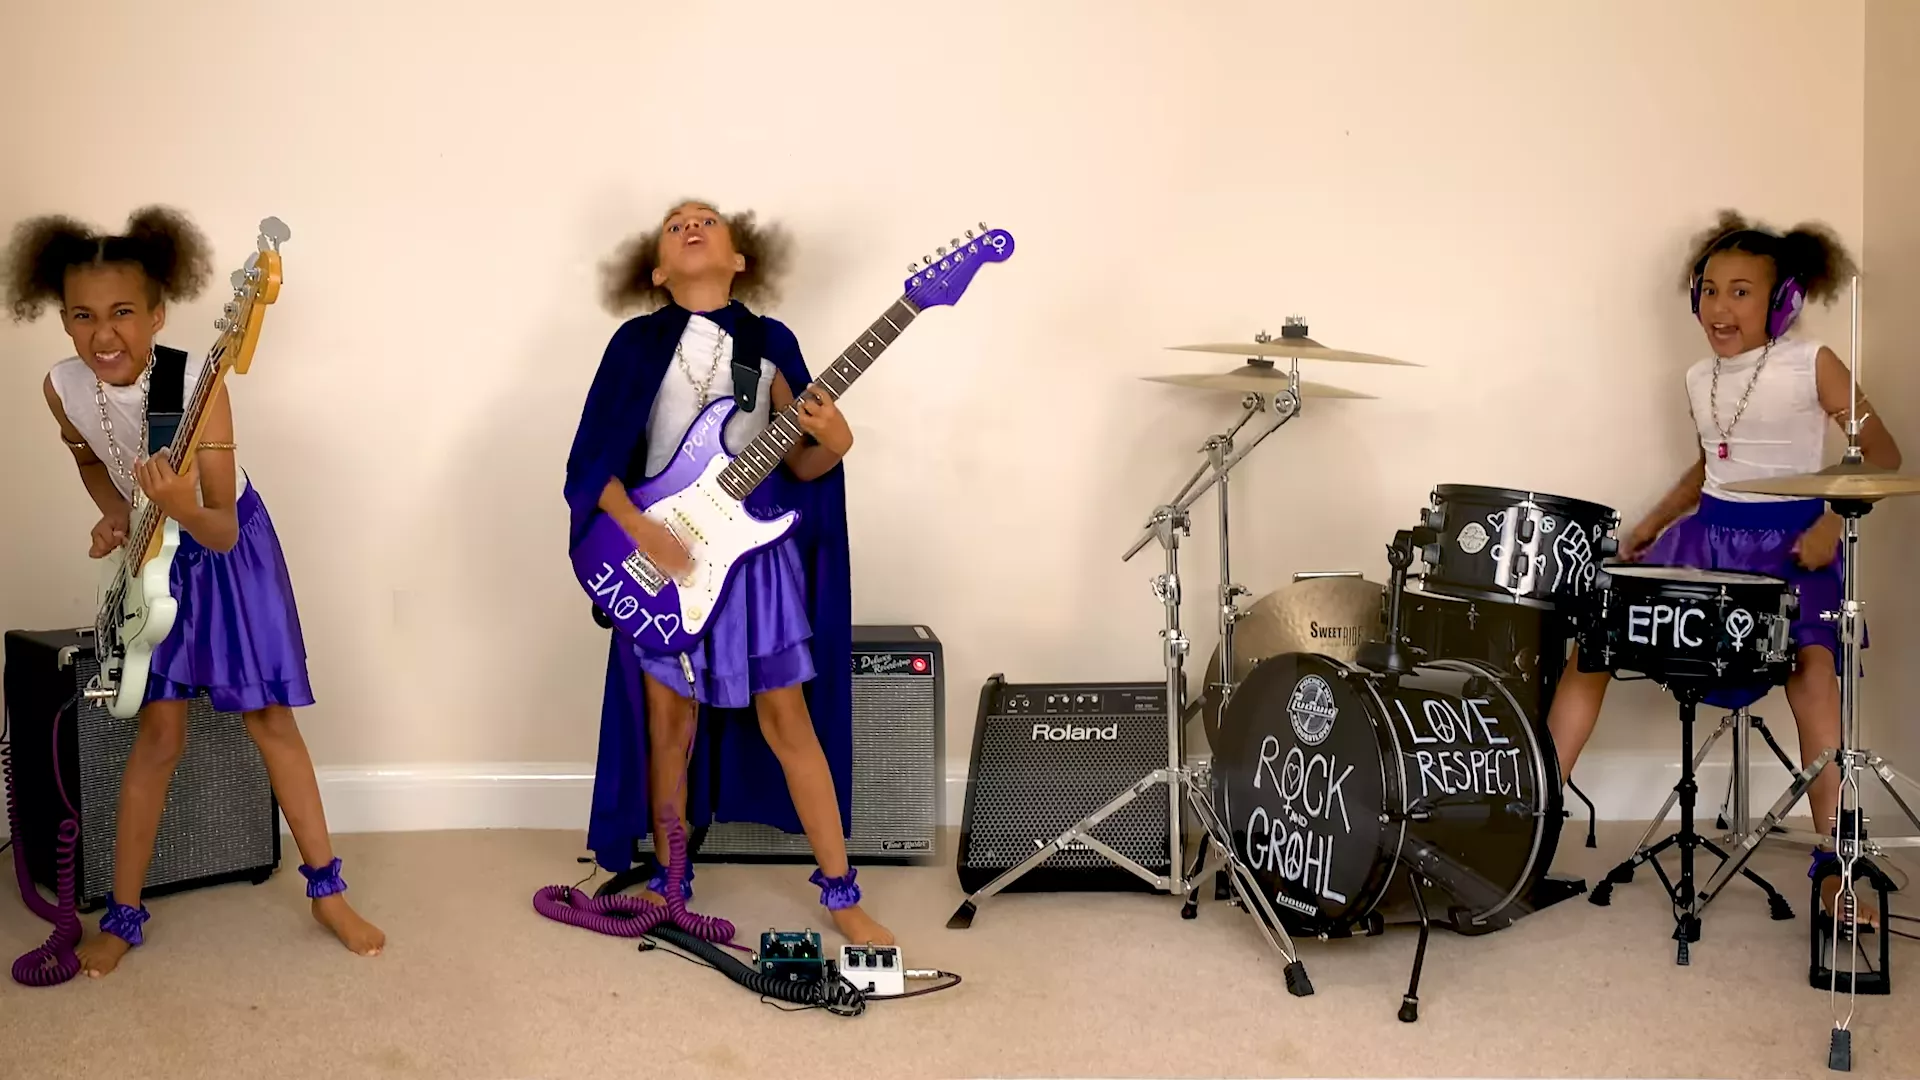 Duellen fortsætter: 10-årigt geni skriver sang til Dave Grohl